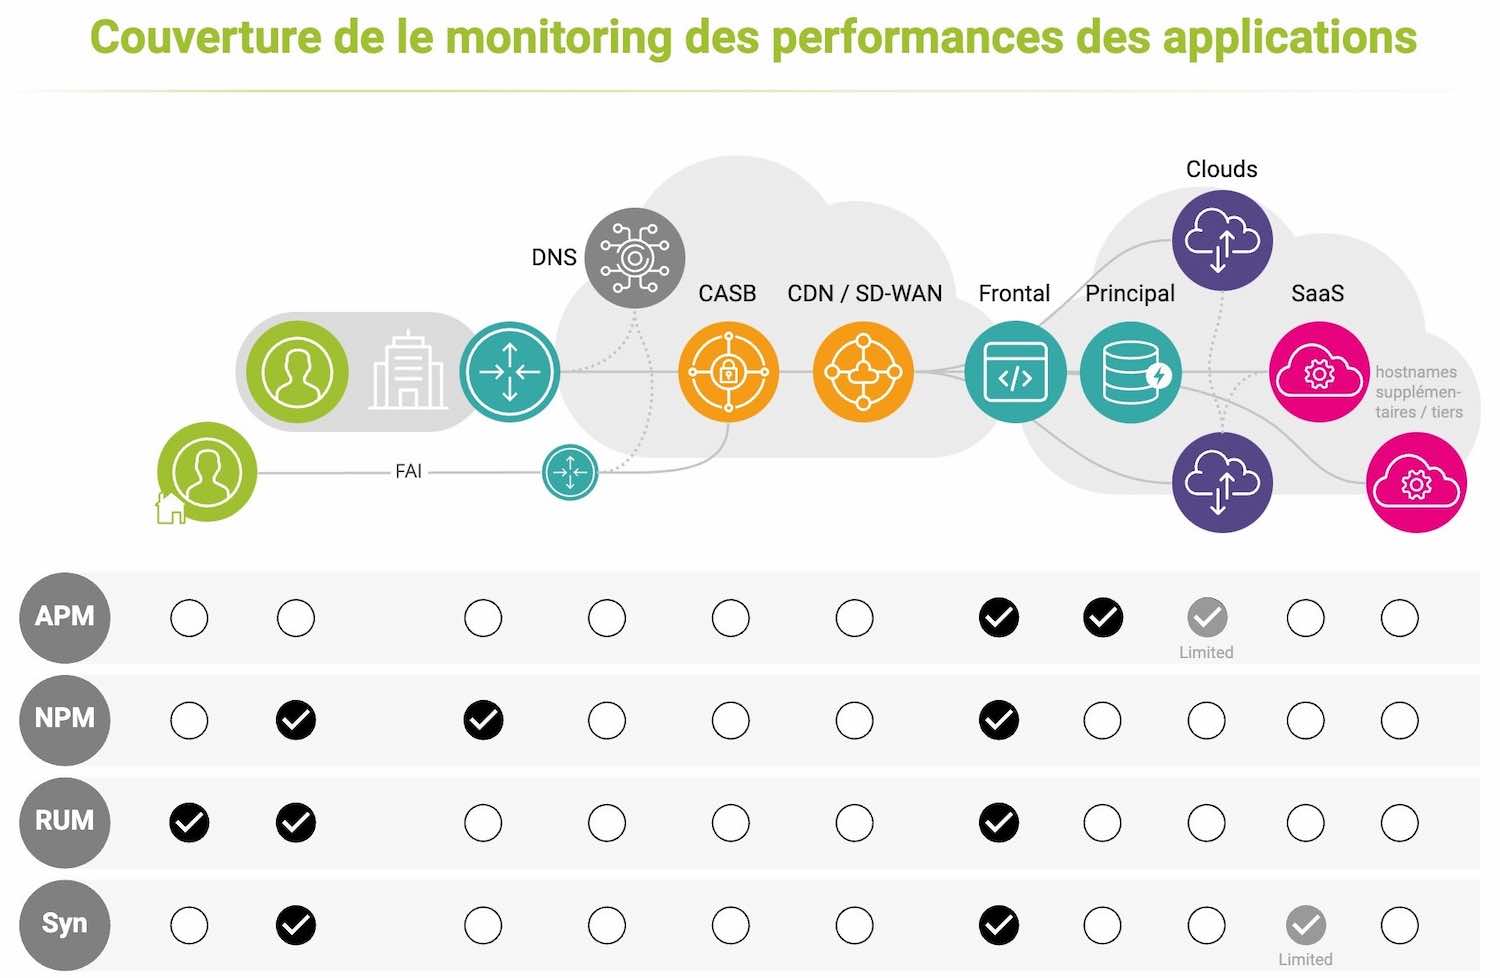 Monitoring des performances des applications Couverture de NPM, APM, RUM et surveillance des performances synthétiques